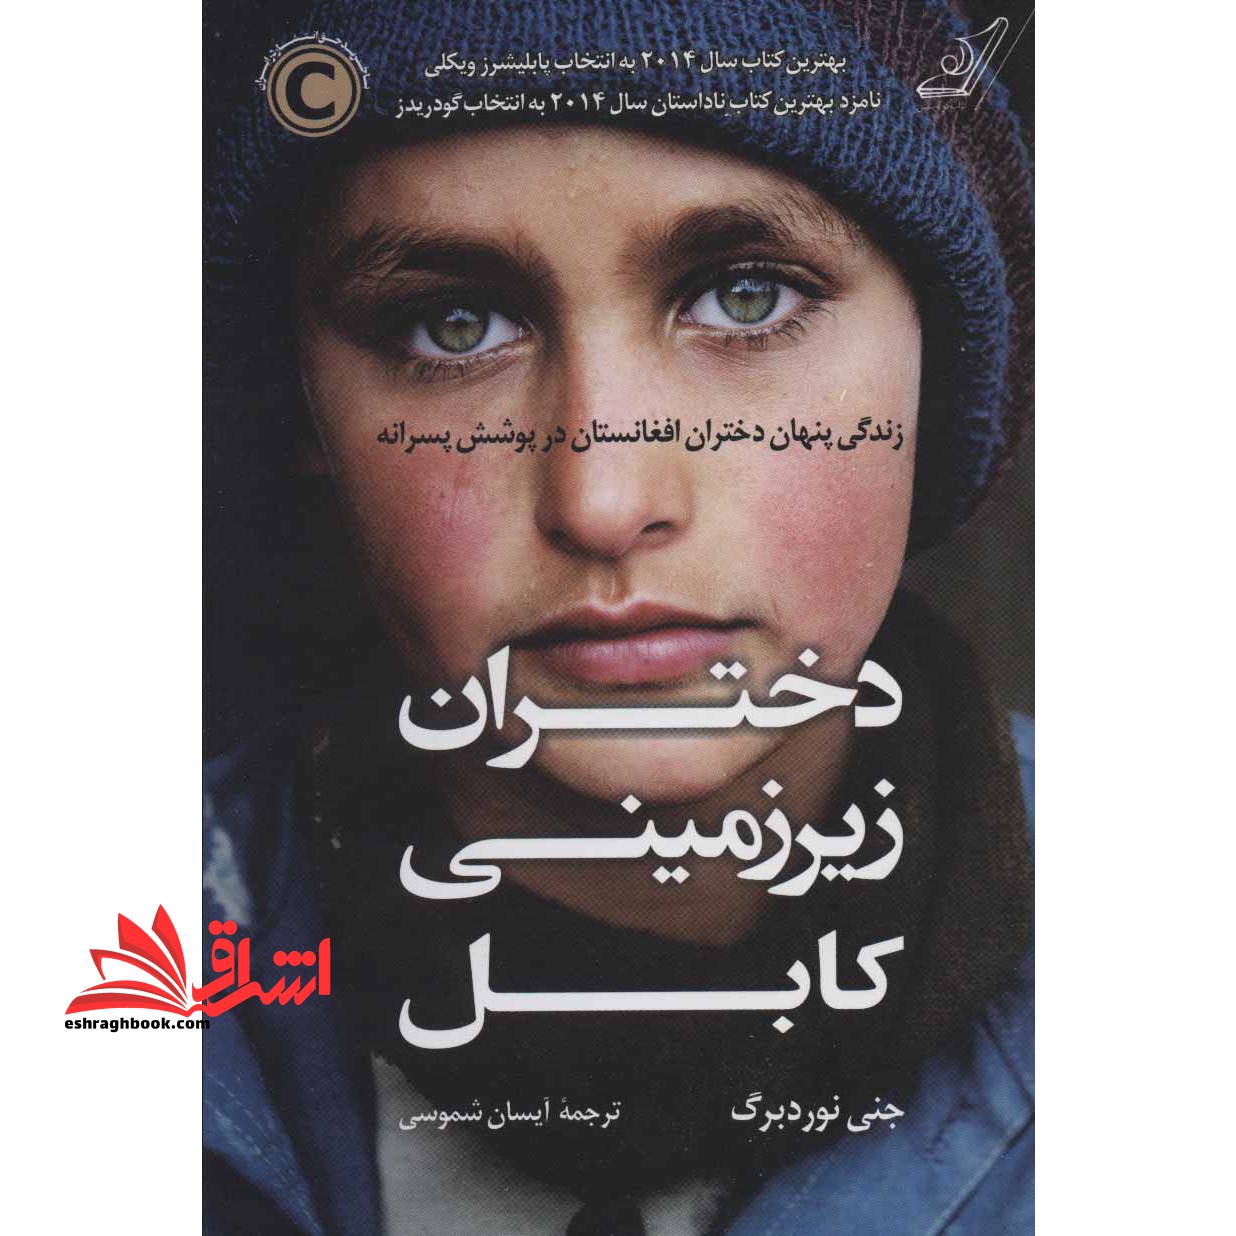 کتاب دختران زیر زمینی کابل - زندگی پنهان دختران افغانستان در پوشش پسرانه